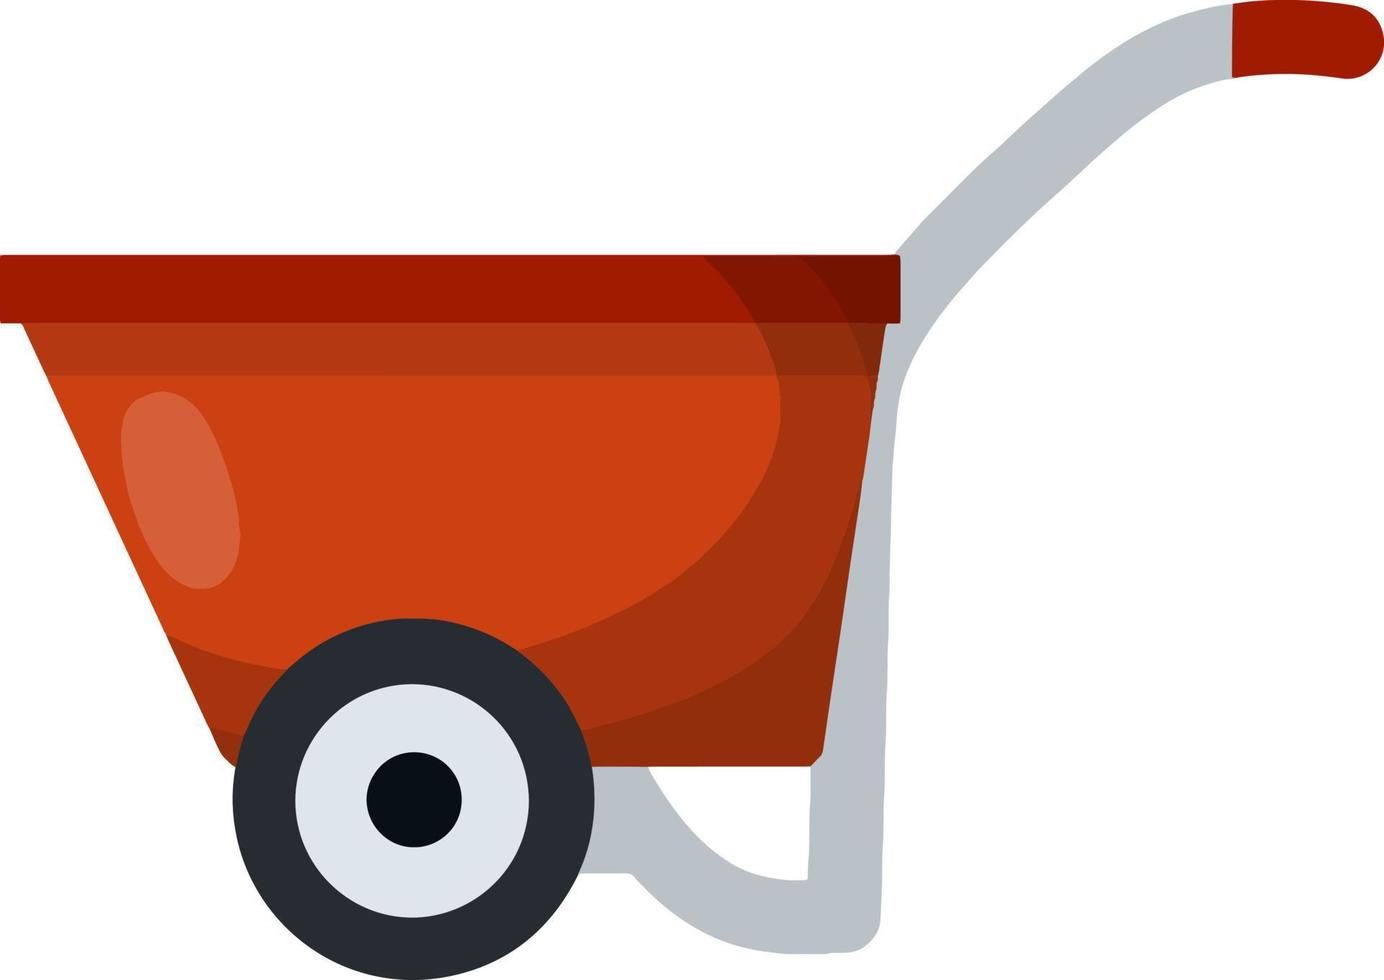 dorpskar voor het vervoeren van goederen. rode handkar. landelijke kruiwagen. cartoon vlakke afbeelding vector